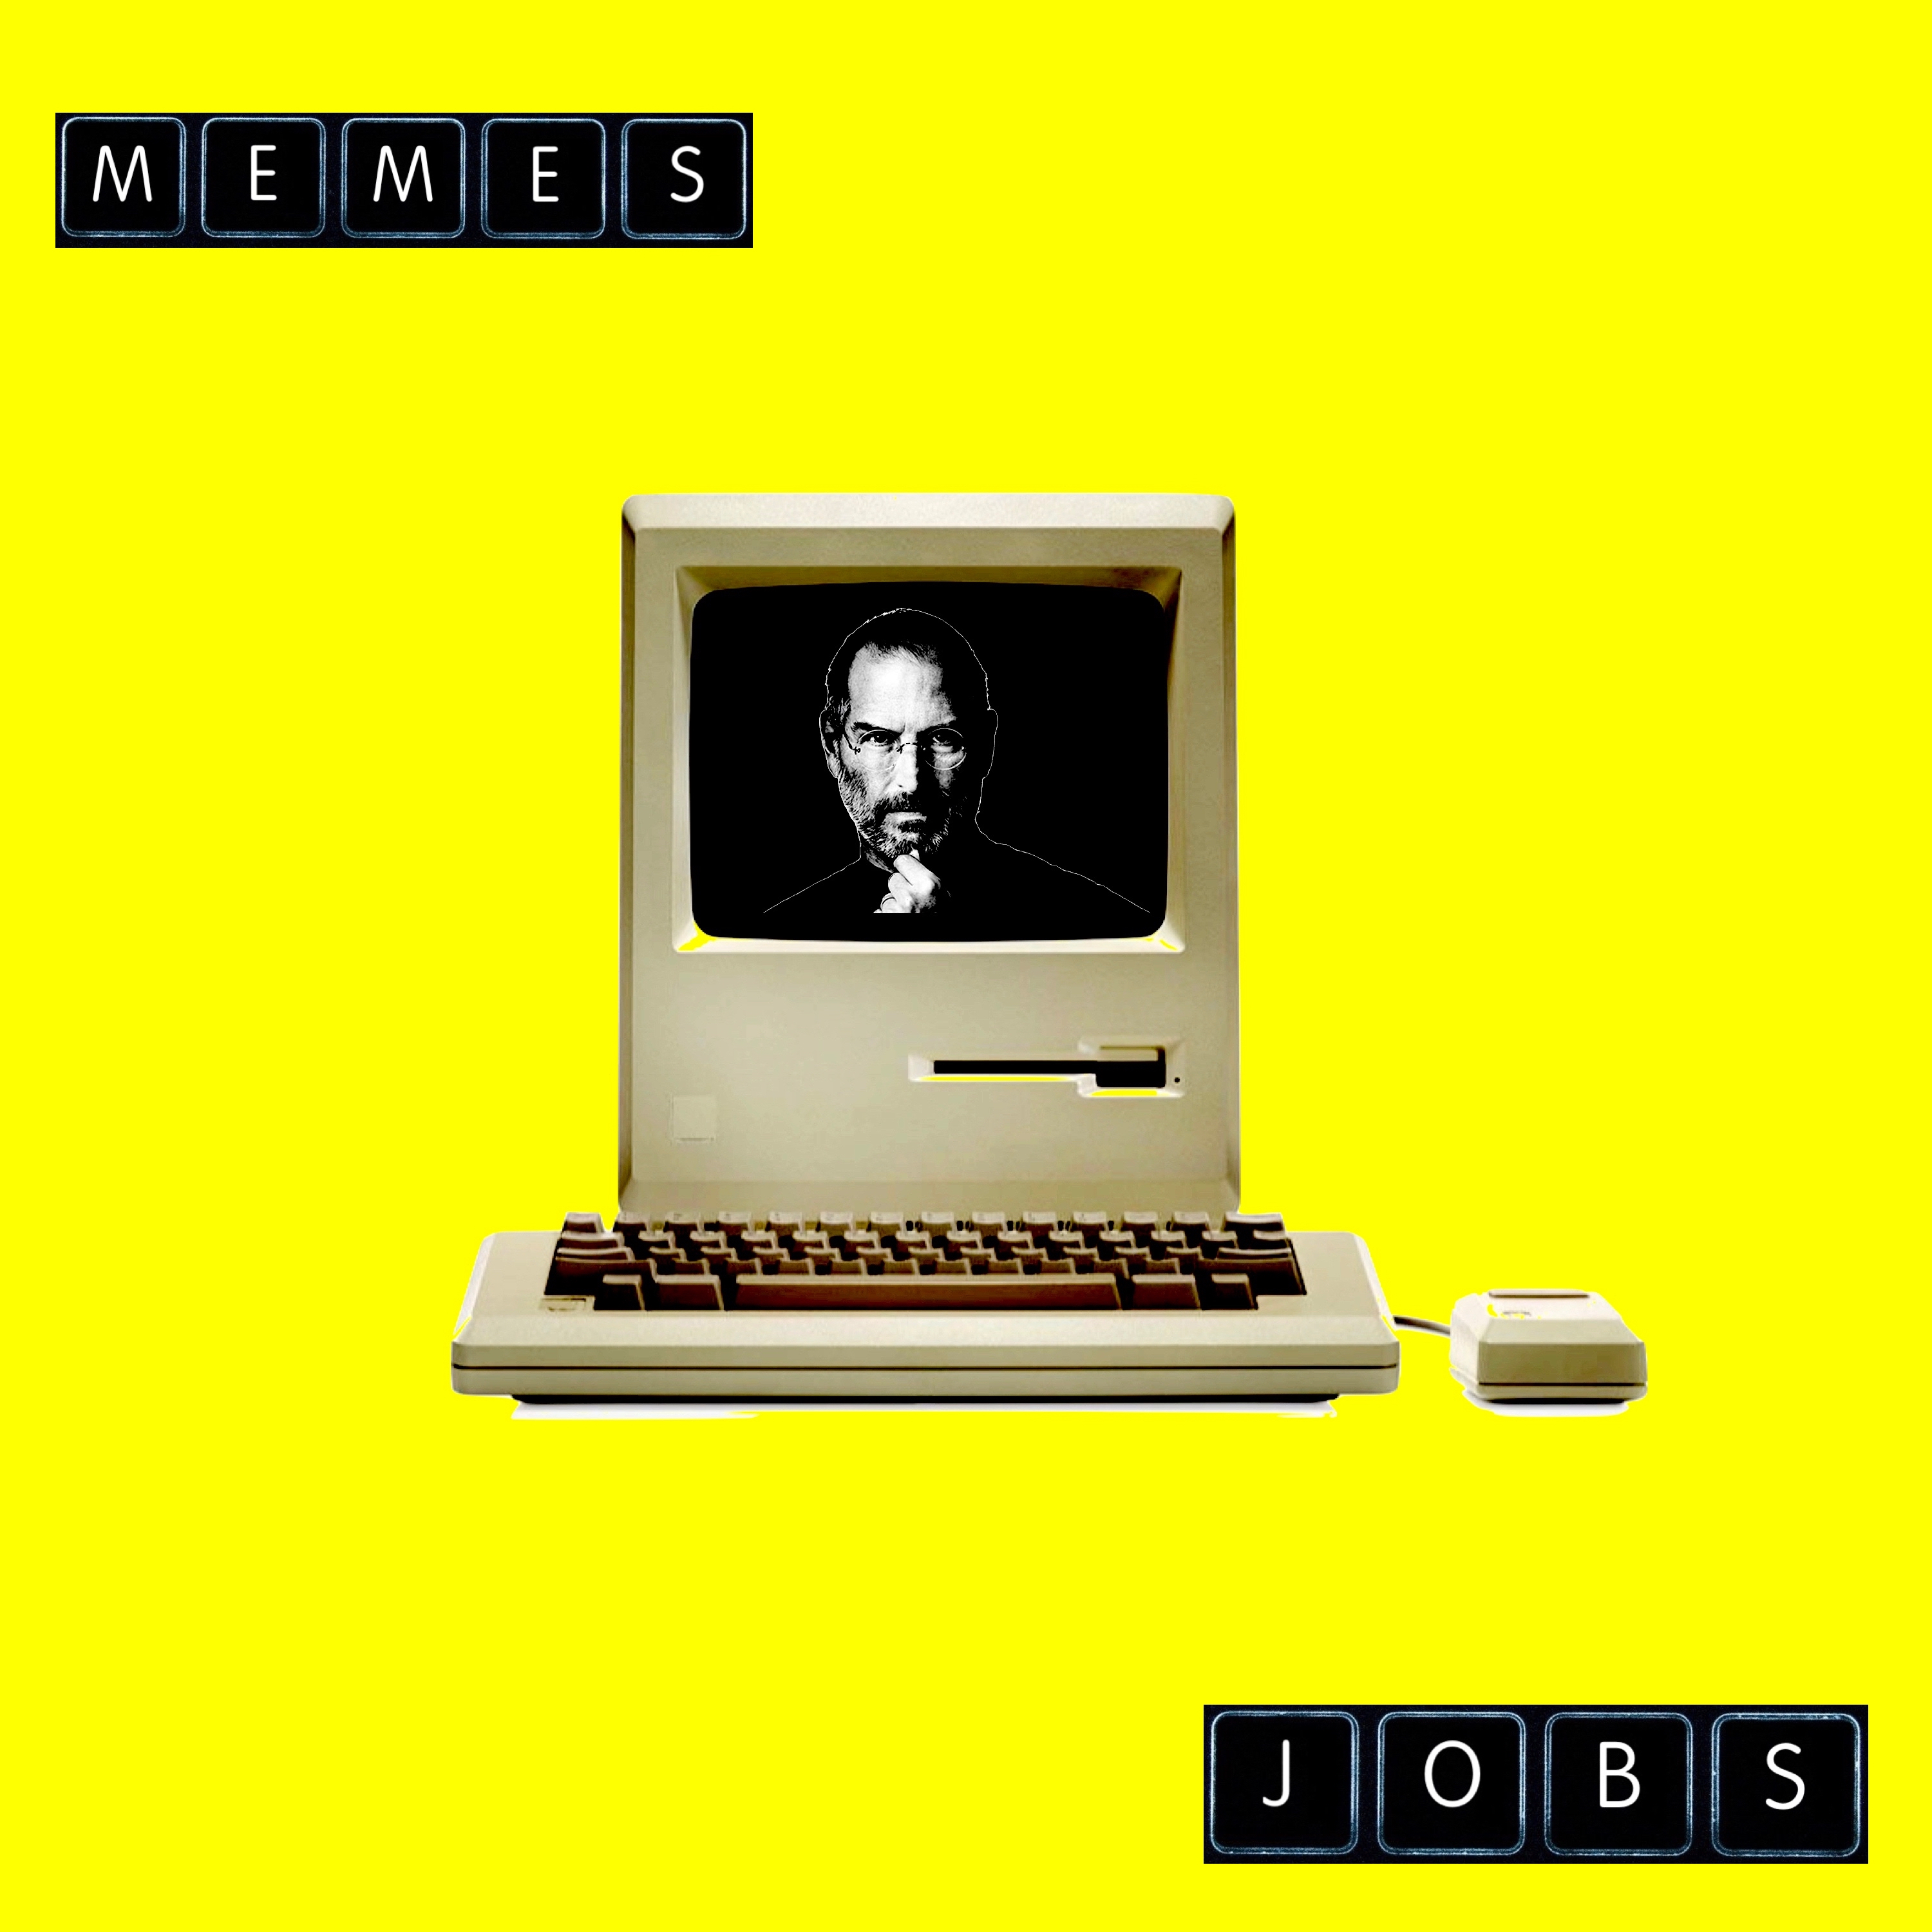 J.O.B.S. - MEMES